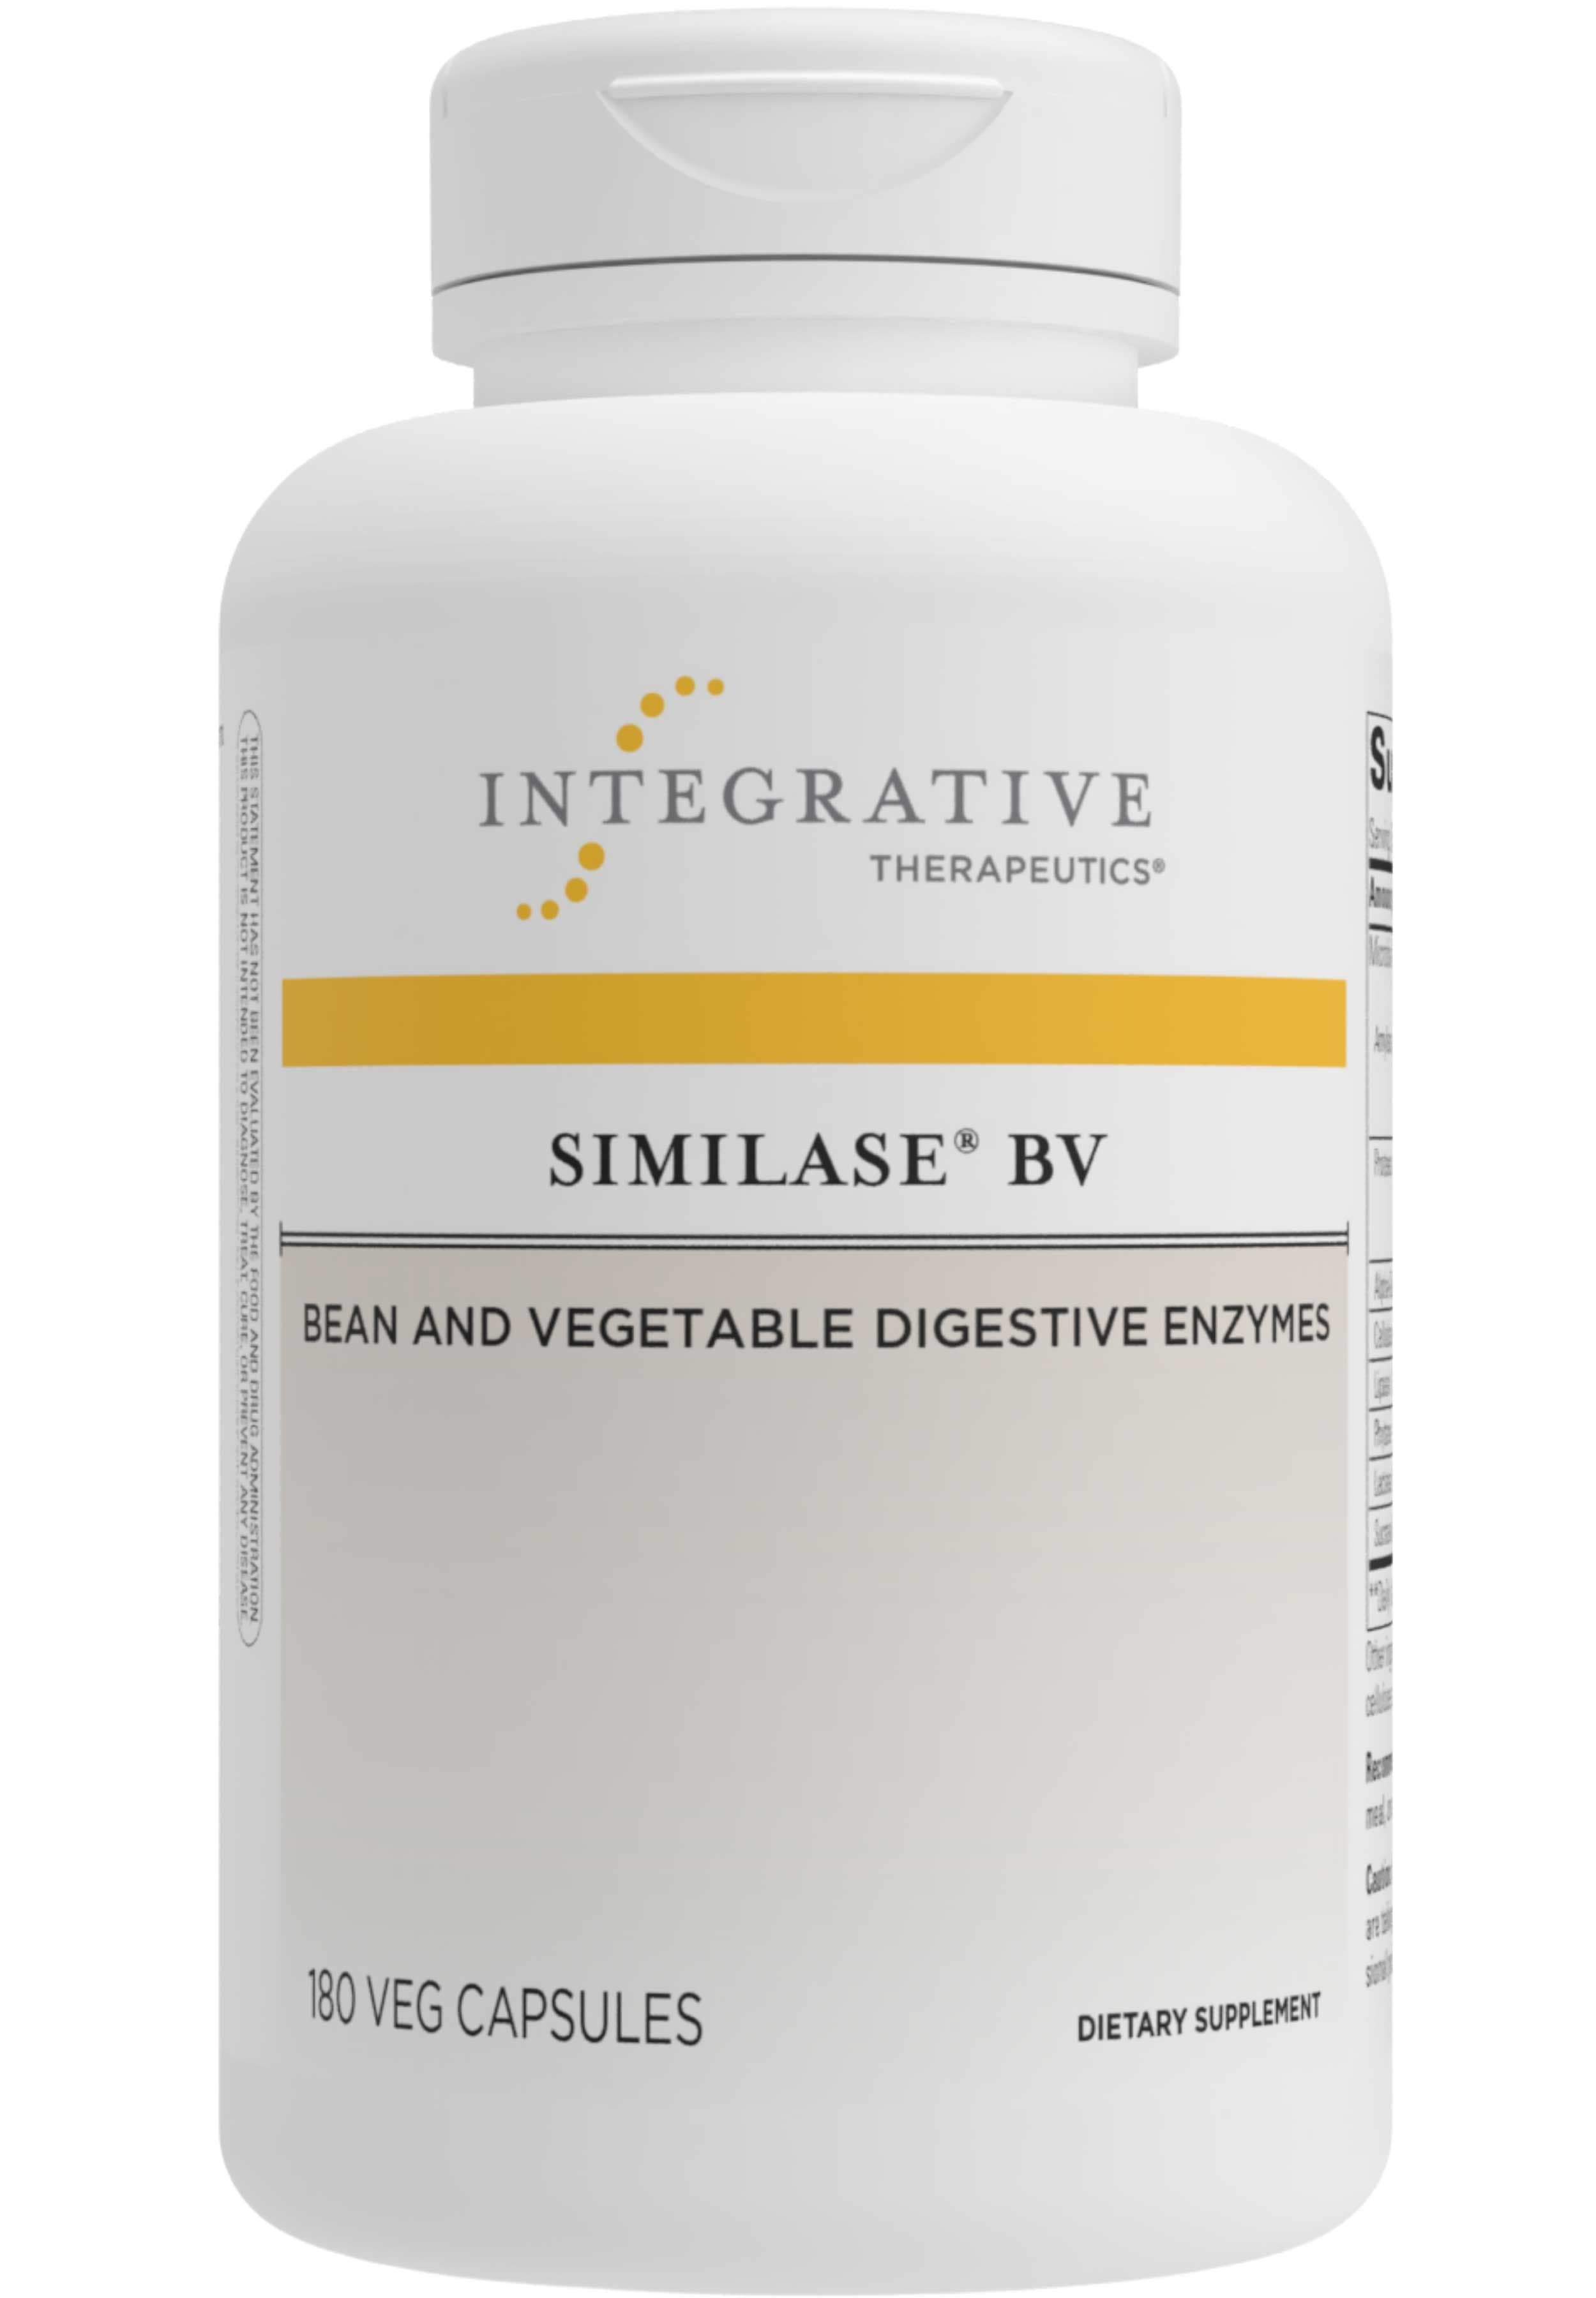 Integrative Therapeutics Similase BV